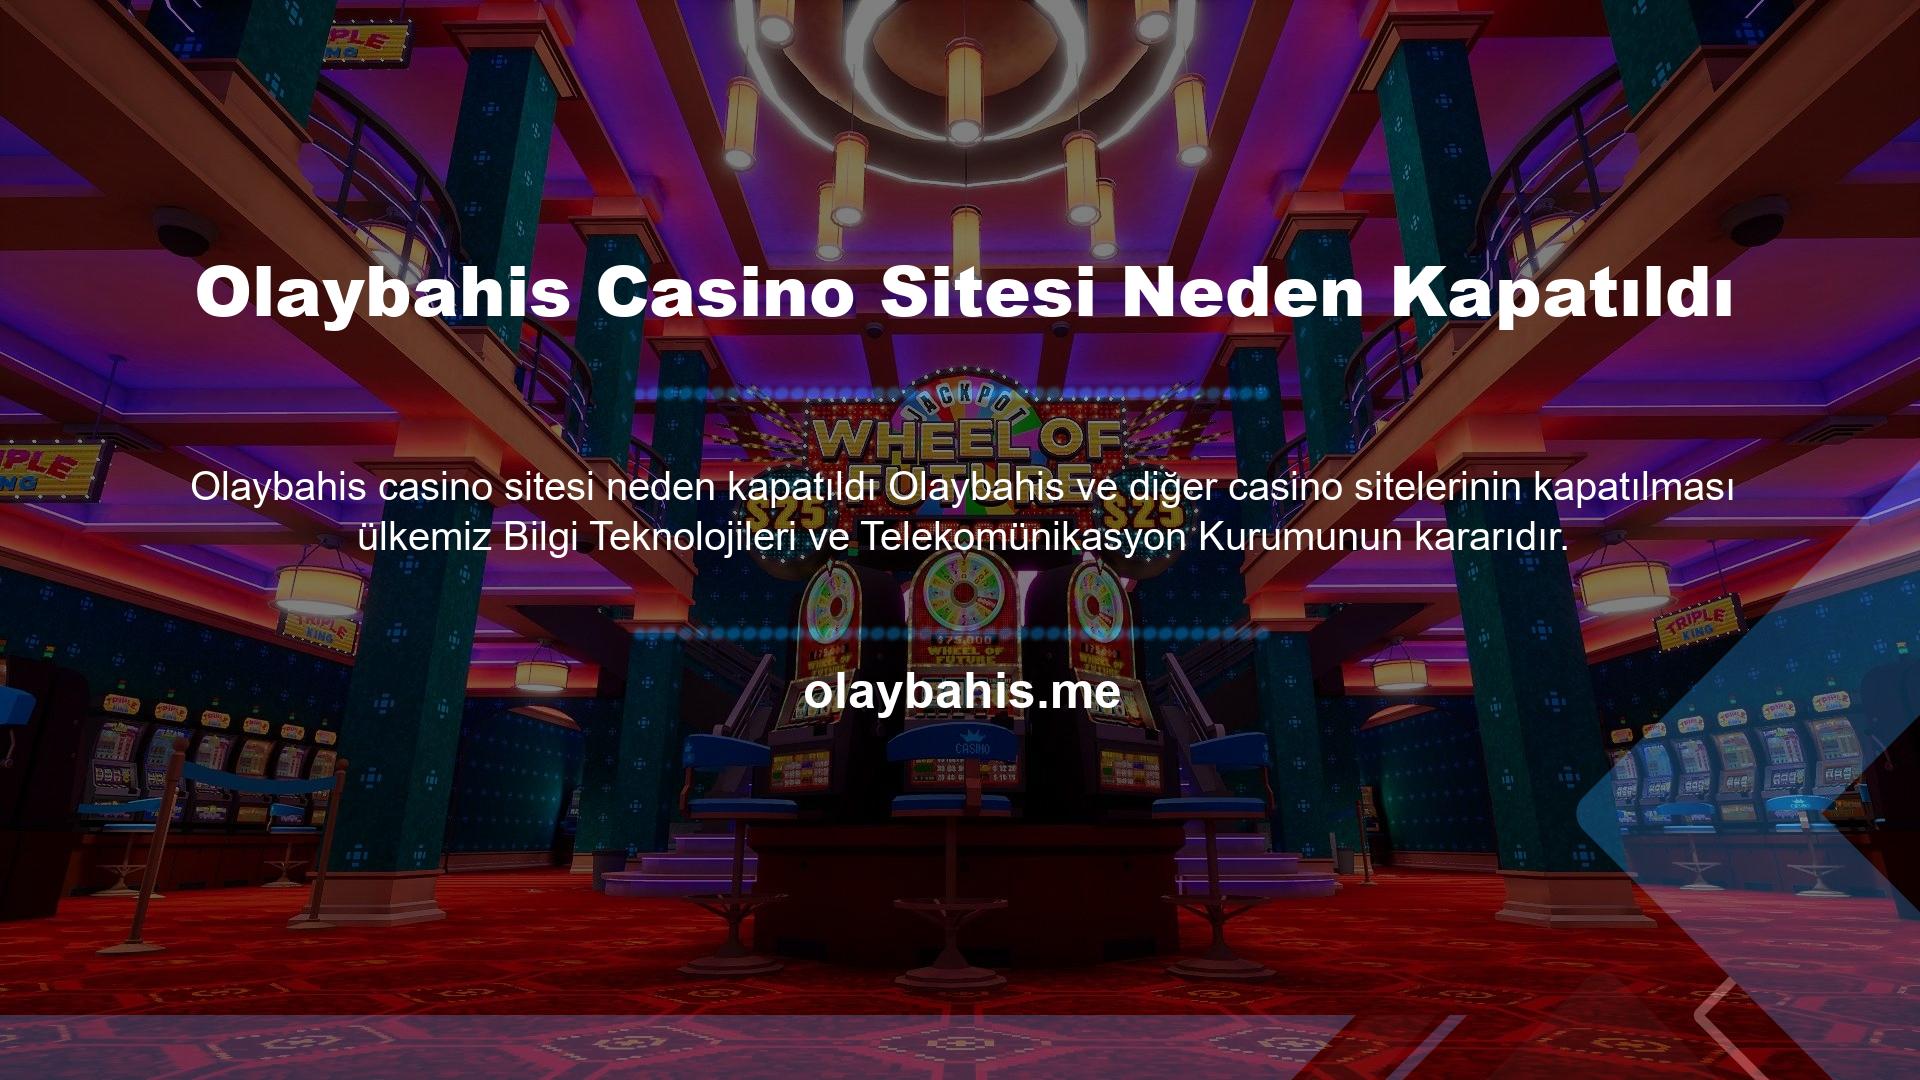 Bu kararın dayanağı, Cumhurbaşkanlığı Teşkilatı'nın 56 sayılı Türk Kanunu'na göre, casino siteleri yurt dışında lisanslı ve denetlenmiş olsa bile, casino ve spor bahis siteleri kuruluşlarının işletmeci şirket olarak değerlendirilmesine izin vermemesidir